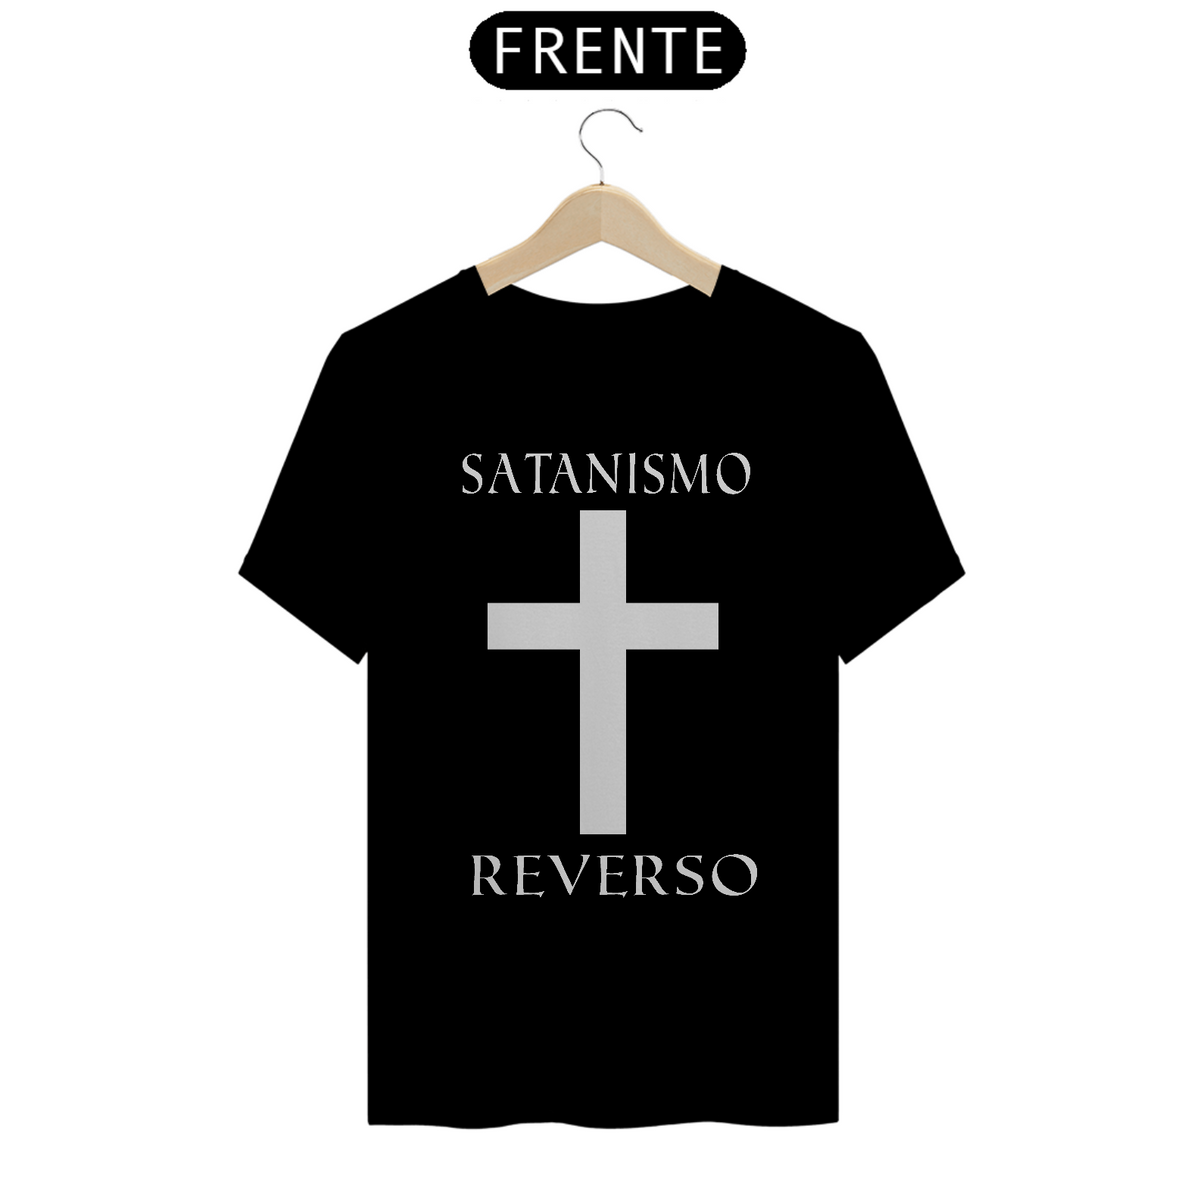 Nome do produto: Camiseta Satanismo Reverso